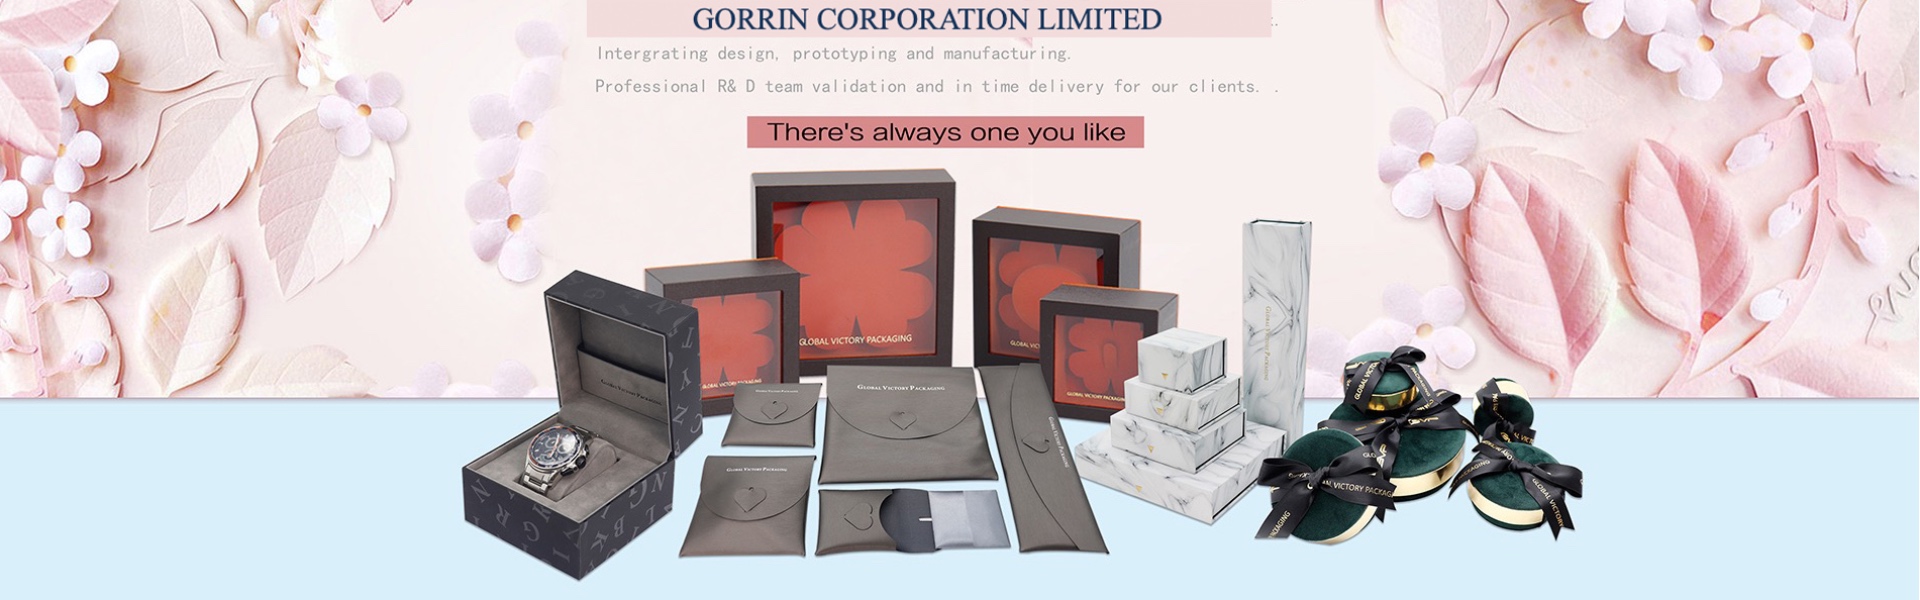 紙箱 、 ジ ュ エ リ ー 、 ジ ュ エ リ ー ボ ッ ク ス,Gorrin corporation limited